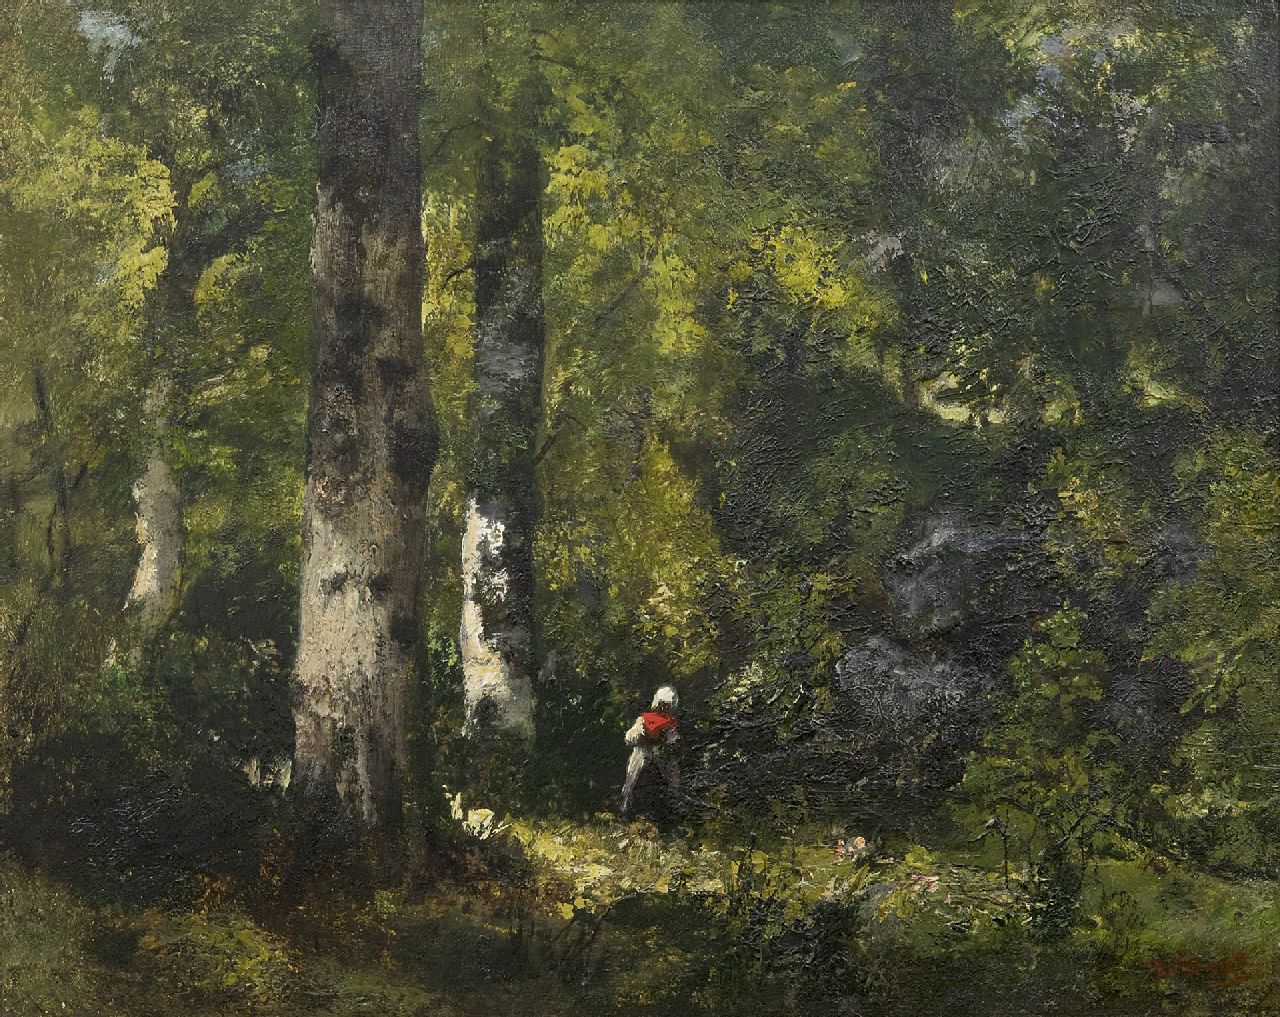 Diaz de la Peña N.V.  | Narcisse Virgile Diaz de la Peña, Houtsprokkelaarster in het bos van Fontainebleau, olieverf op schildersboard 32,3 x 40,6 cm, gesigneerd rechtsonder